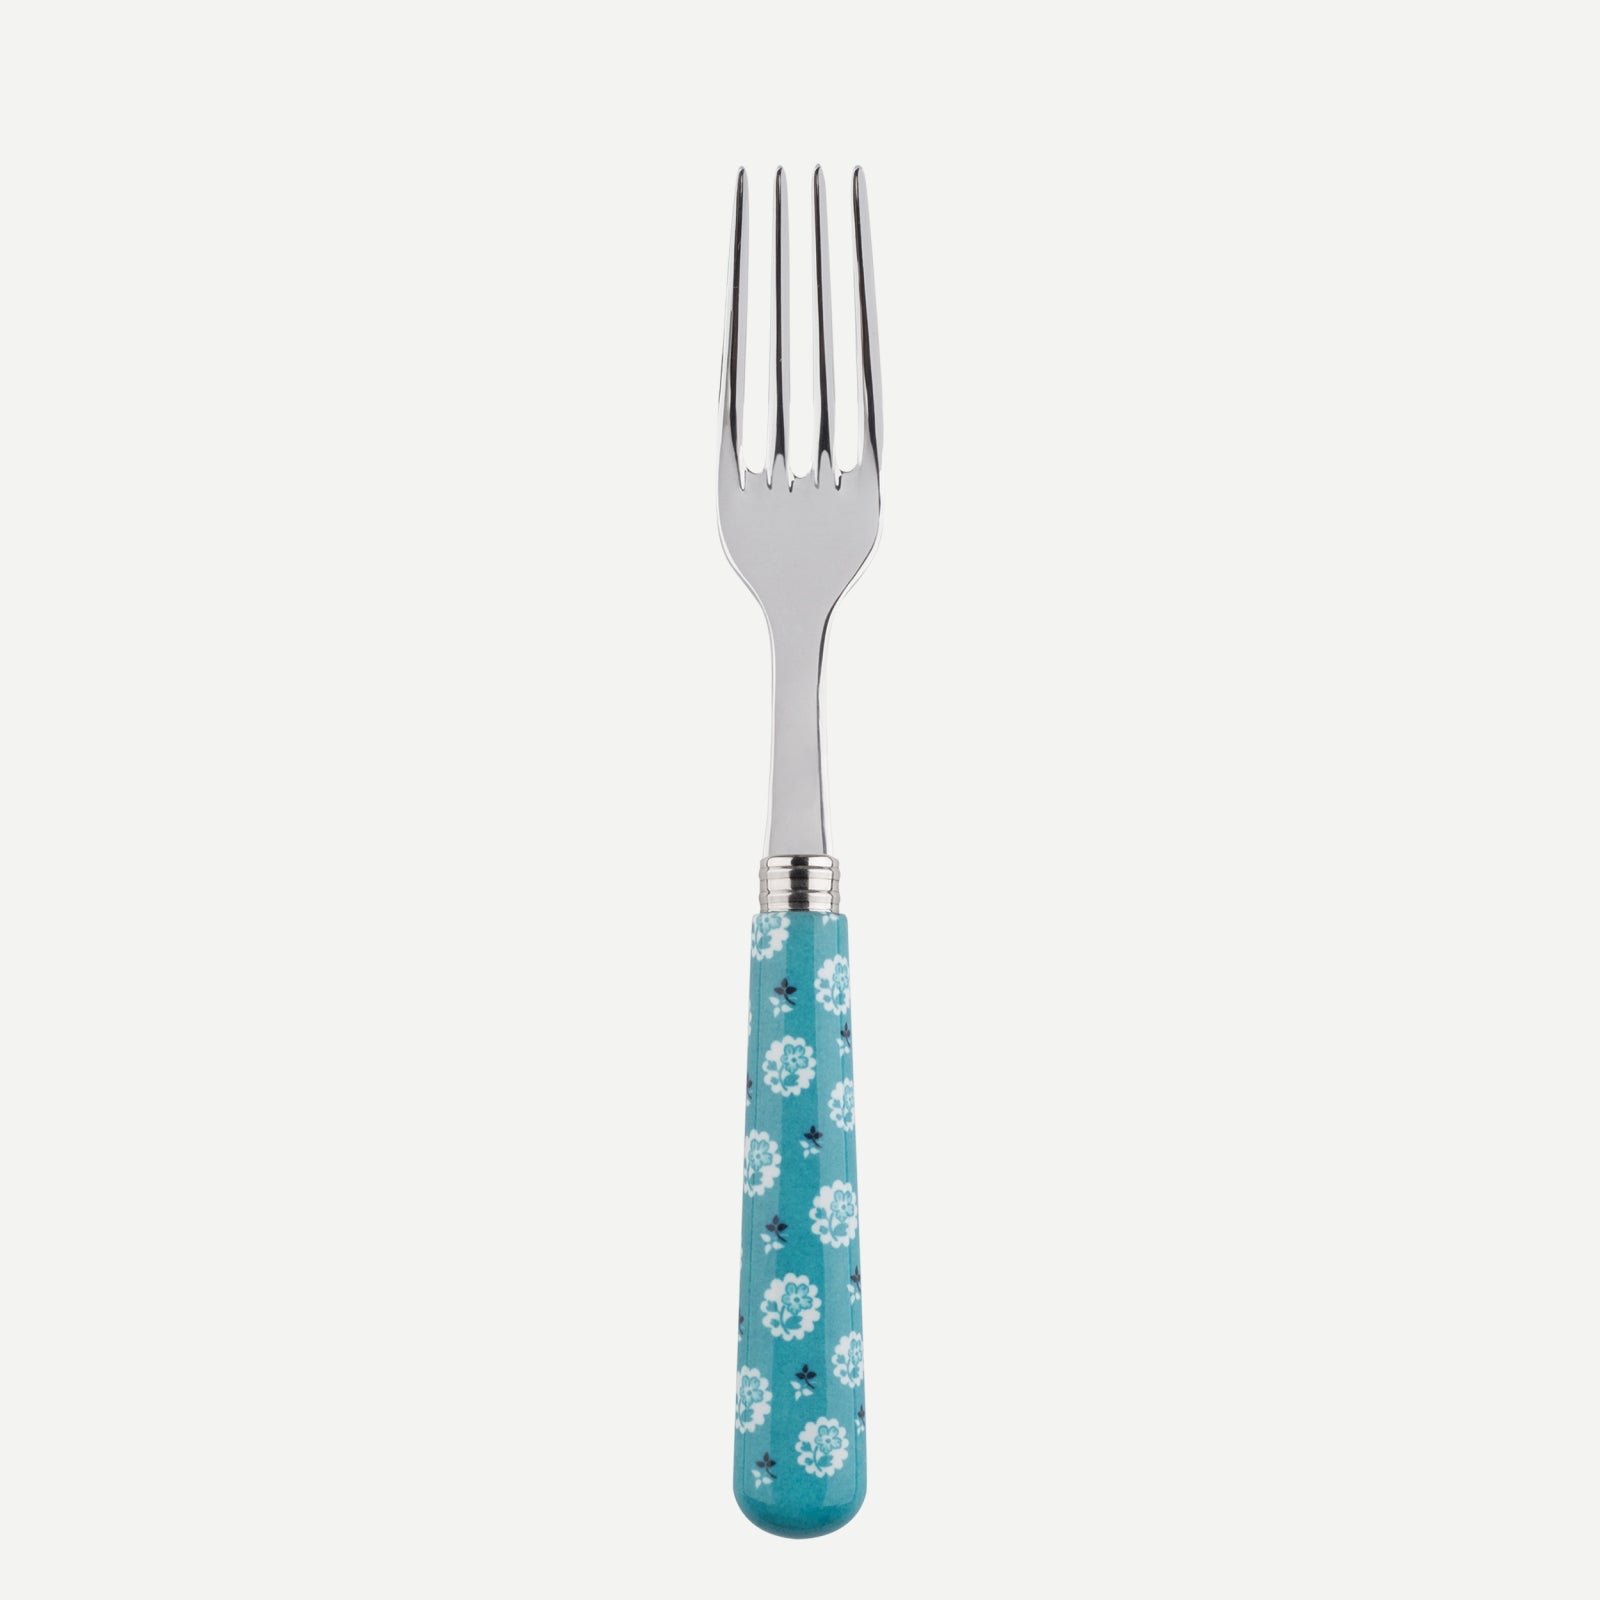 Dinner fork - Provencal - Turquoise